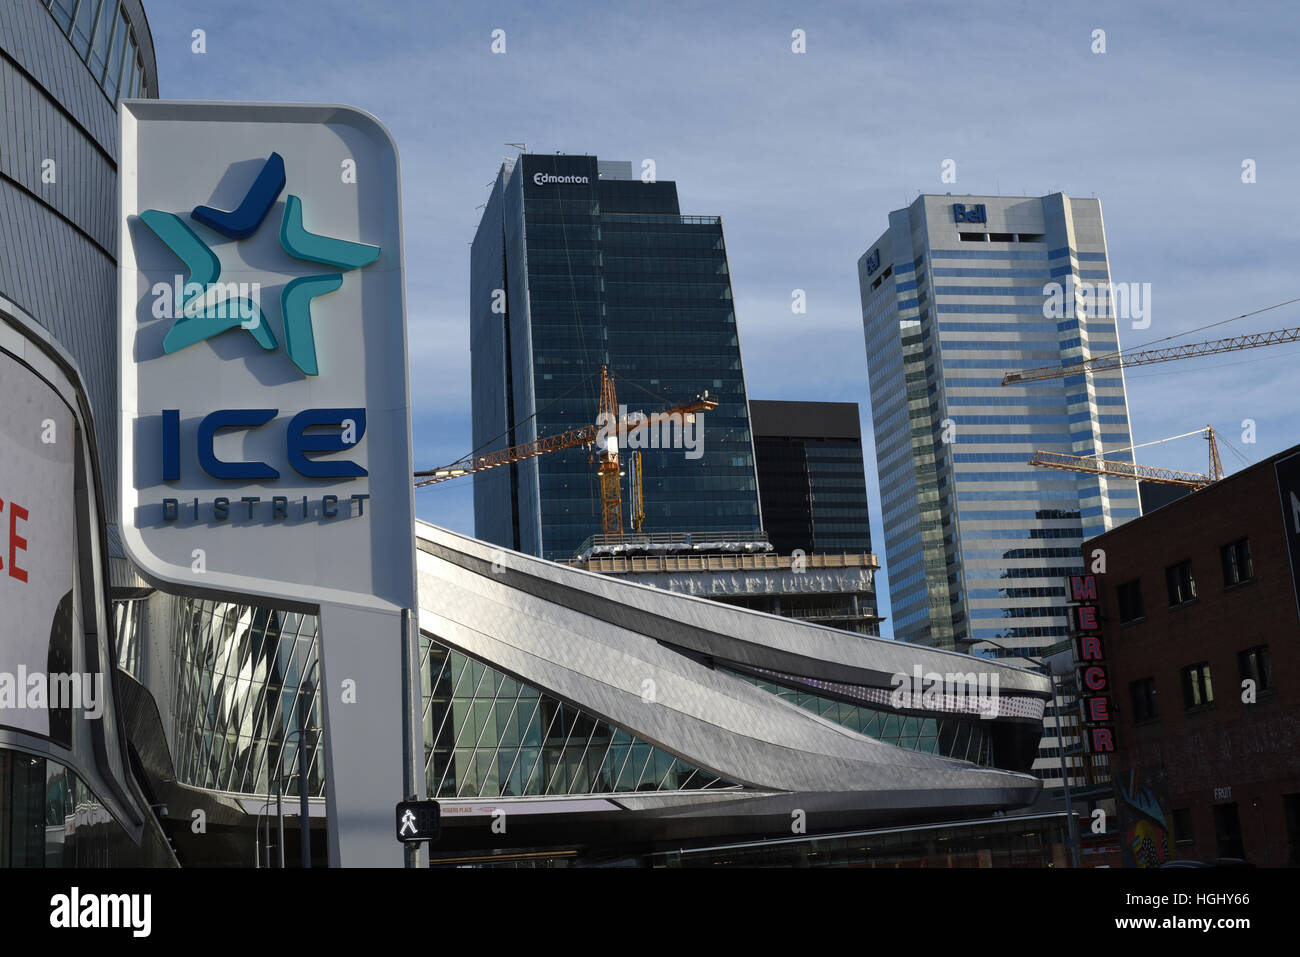 Segni di identificazione del distretto di ghiaccio al di fuori del Rogers Place arena nel centro di Edmonton, Alberta, Canada Foto Stock